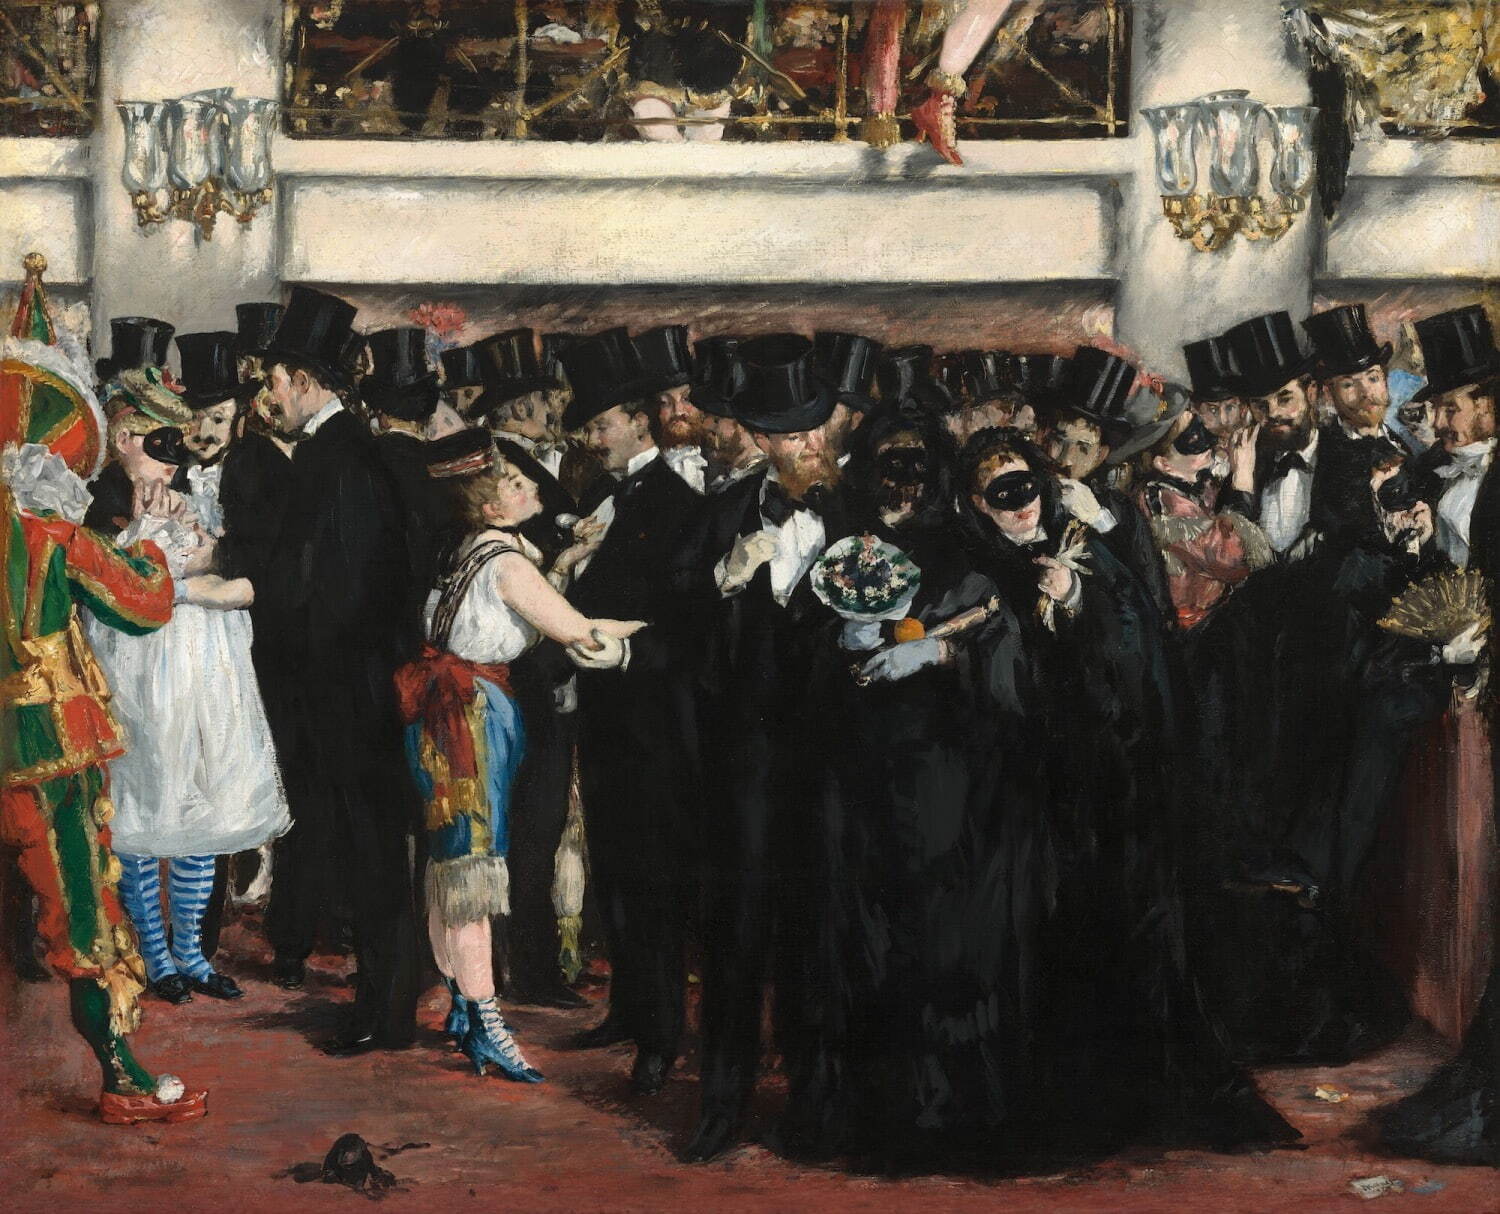 エドゥアール・マネ《オペラ座の仮面舞踏会》1873年 ワシントン、ナショナル・ギャラリー